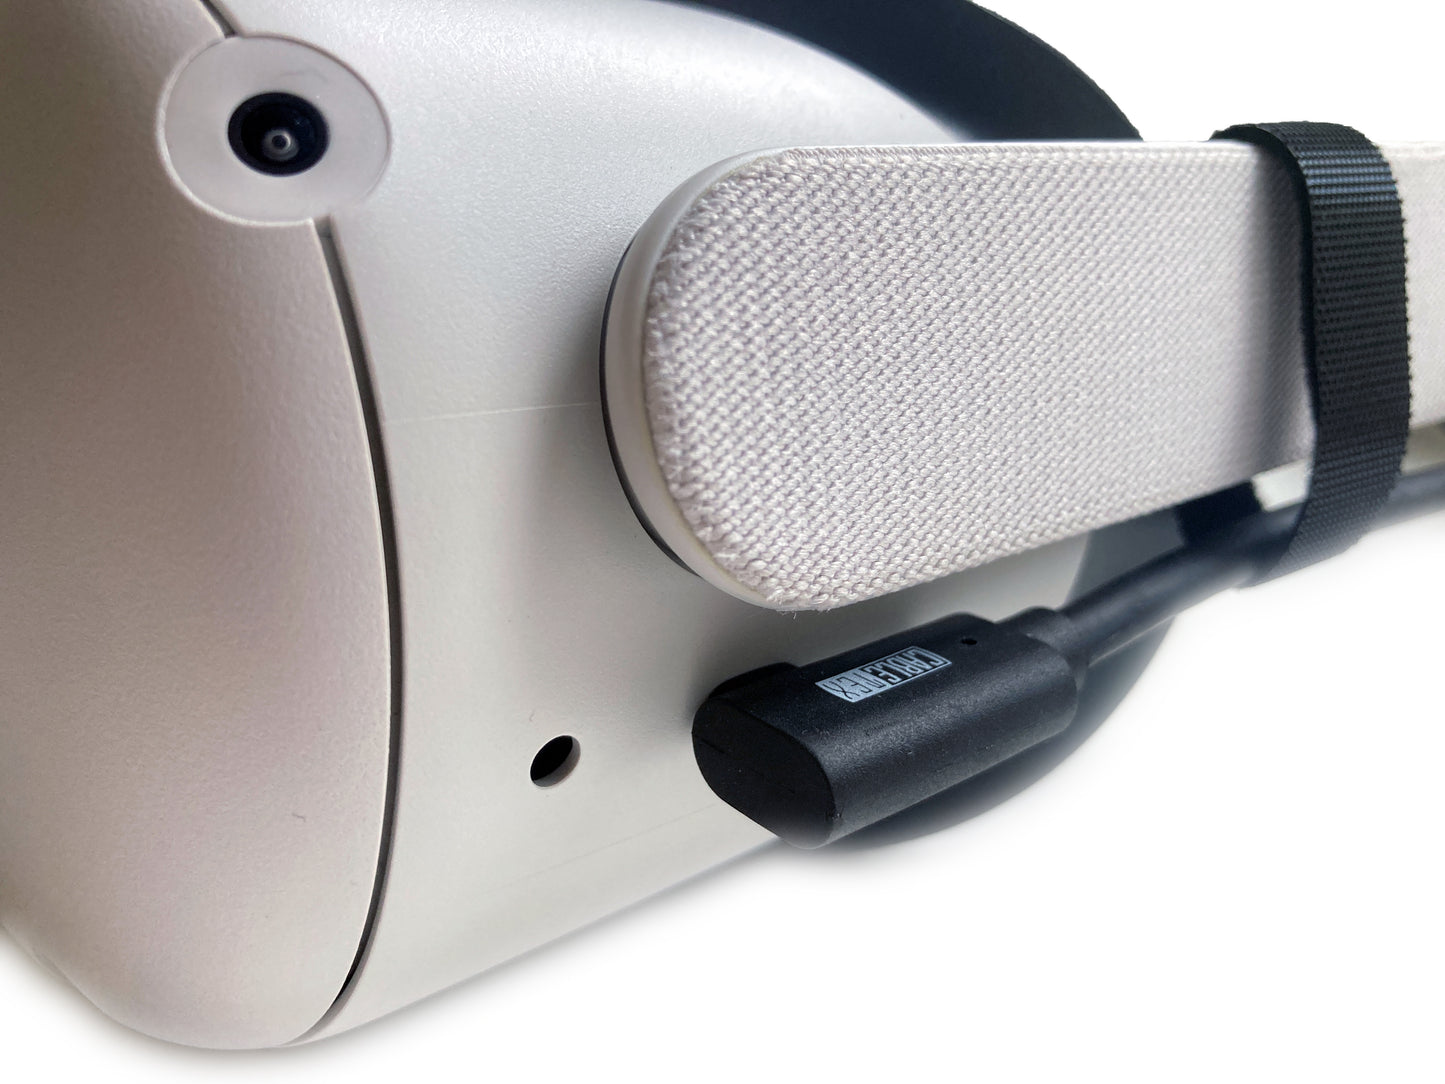 VR Brillen Kabel | für Meta Oculus Quest 3 & 2 | USB-C zu USB-C | USB 3.2 | 5m